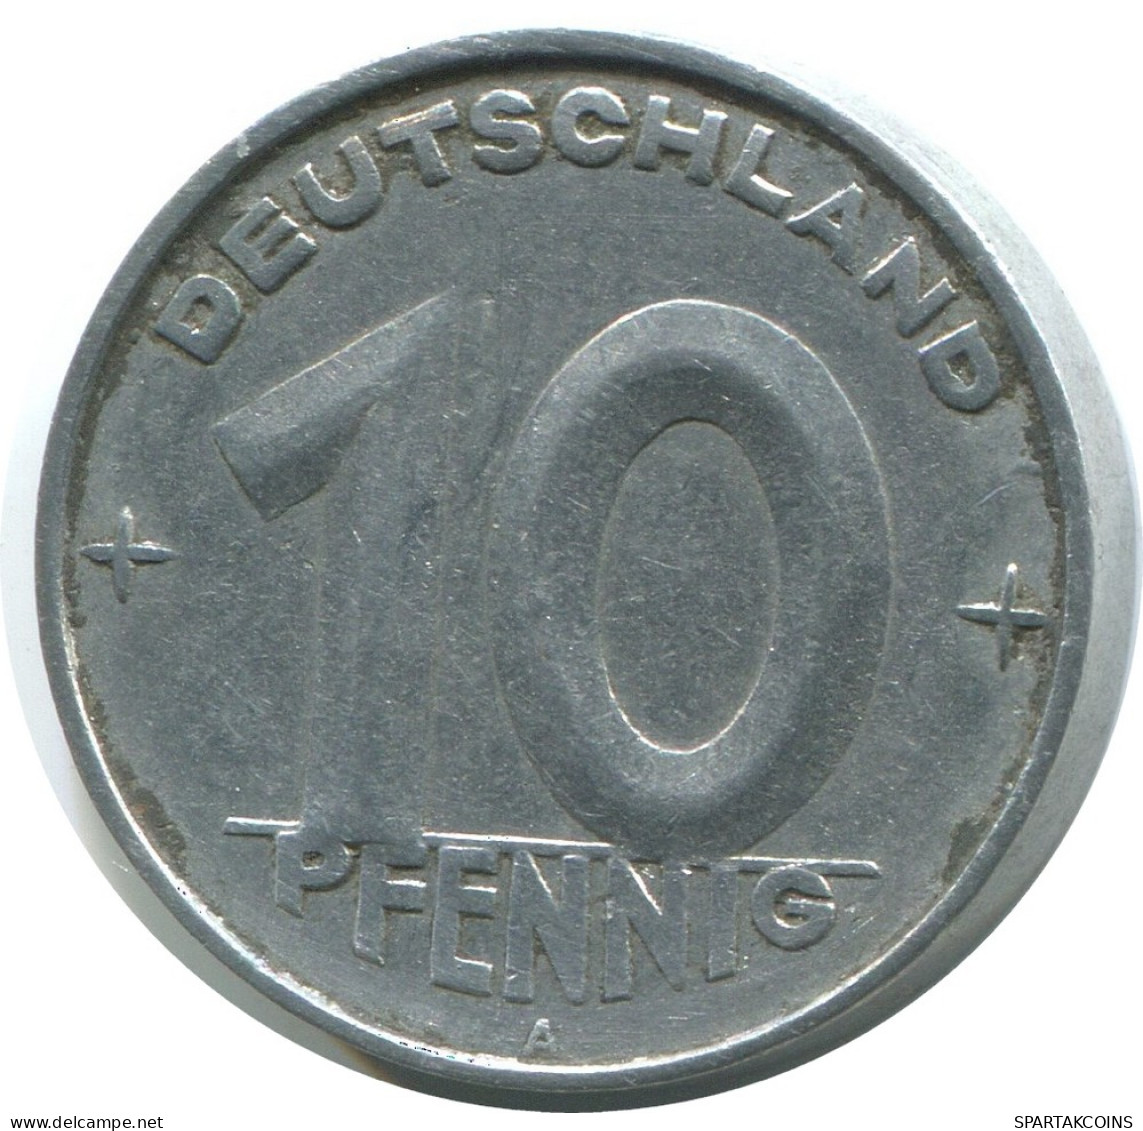 10 PFENNIG 1950 A DDR EAST GERMANY Coin #AE077.U - 10 Pfennig